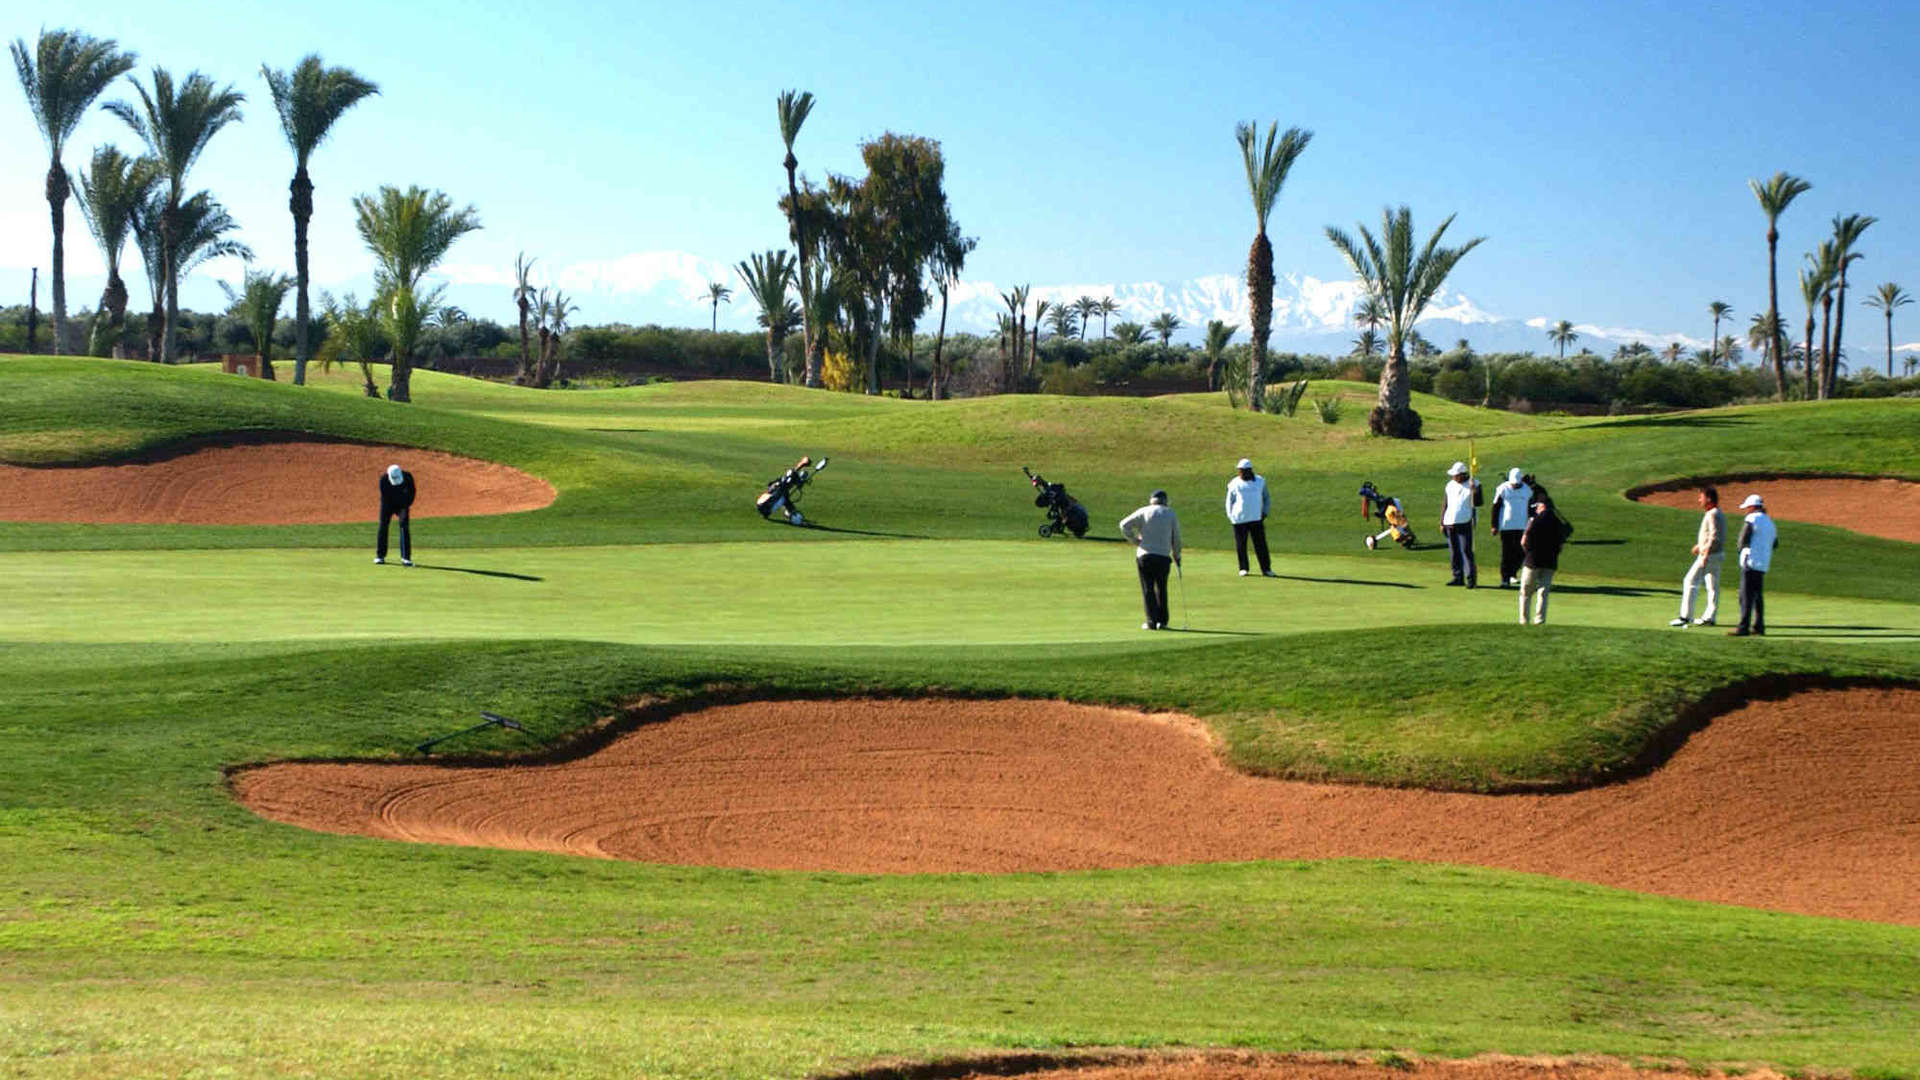 Vente,Terrains & Fermes,Vente lot de terrain de 520m2 à Amelkis II pour villa isolée à Marrakech,Marrakech,Amelkis Golf Resort